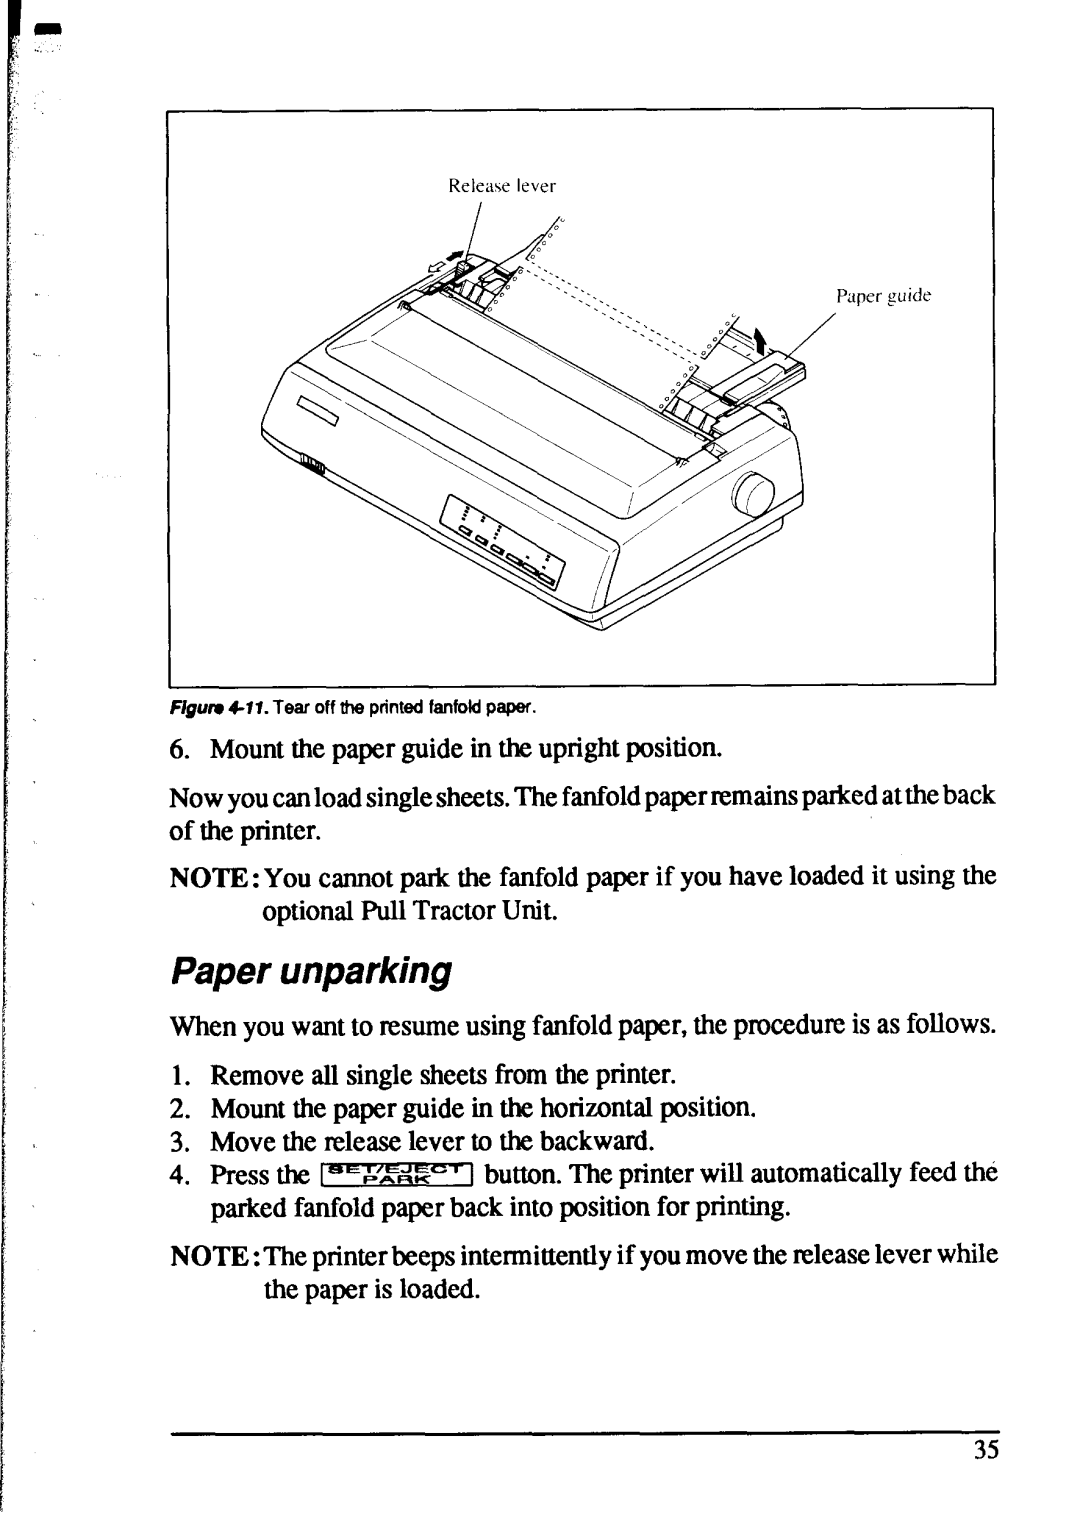 Star Micronics XR-1520, XR-1020 manual Paper unparking 